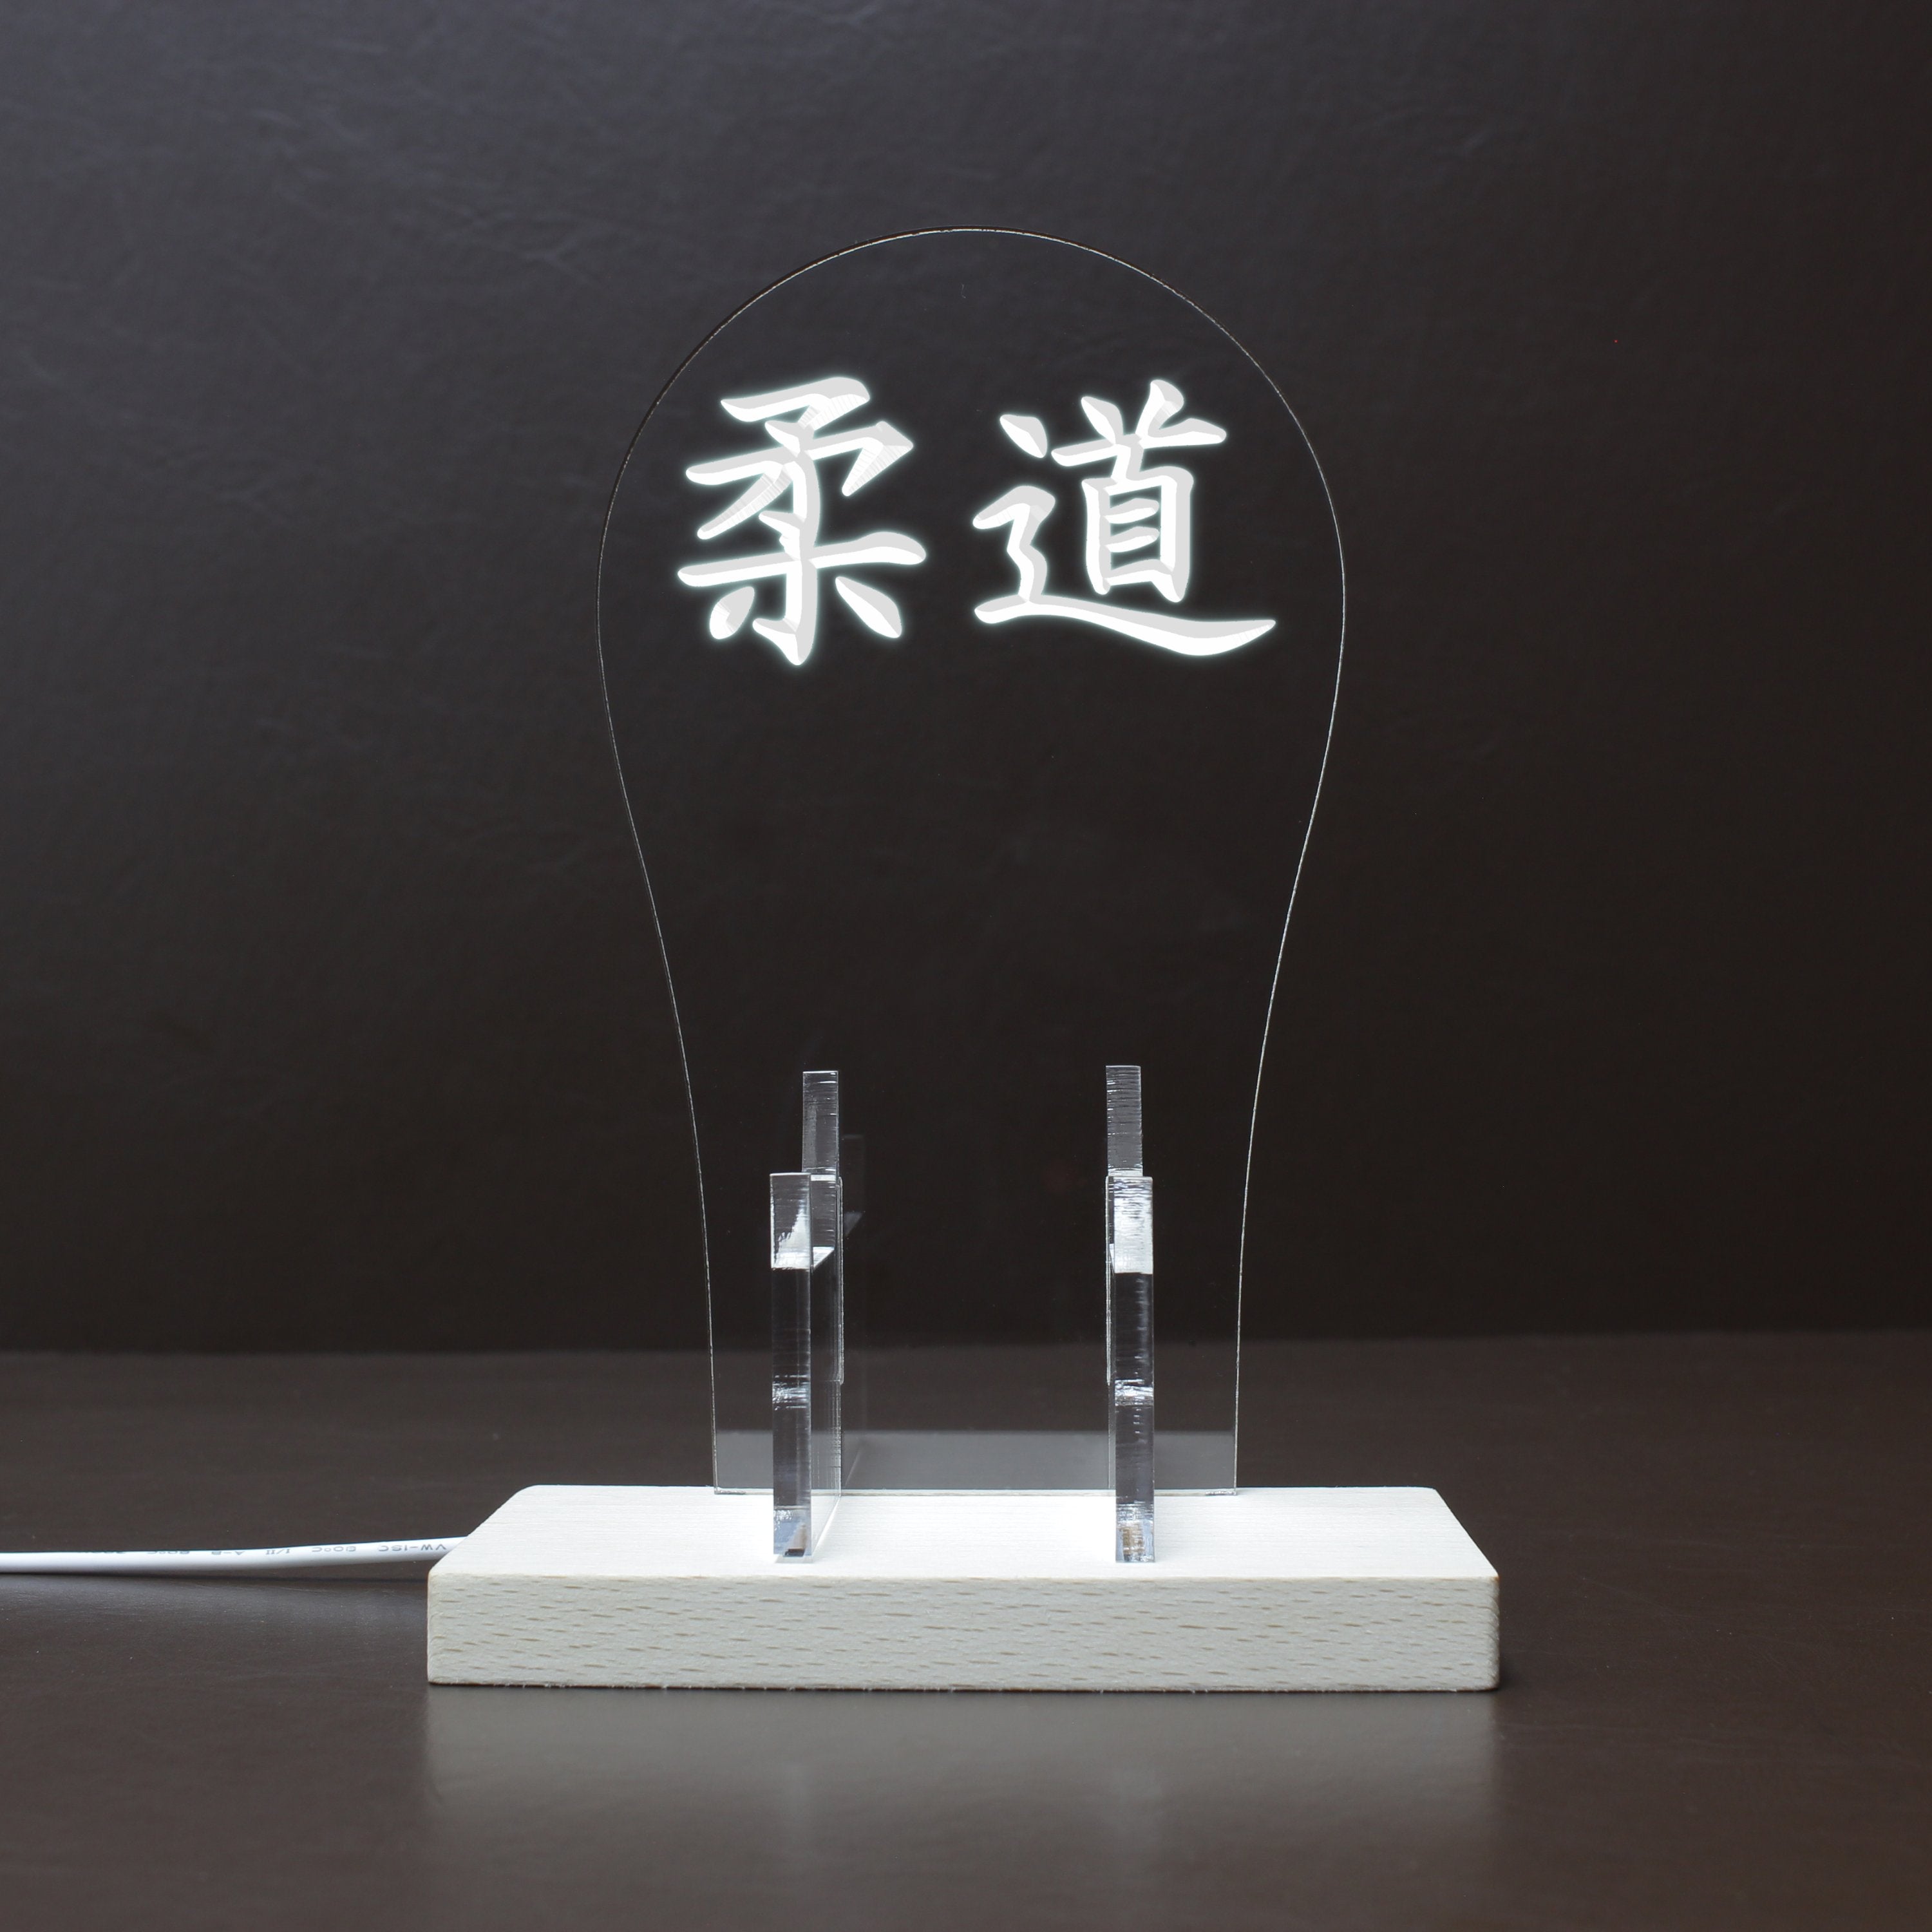 Judo Japanese Kanji Symbol LED Gaming Headset Controller Stand